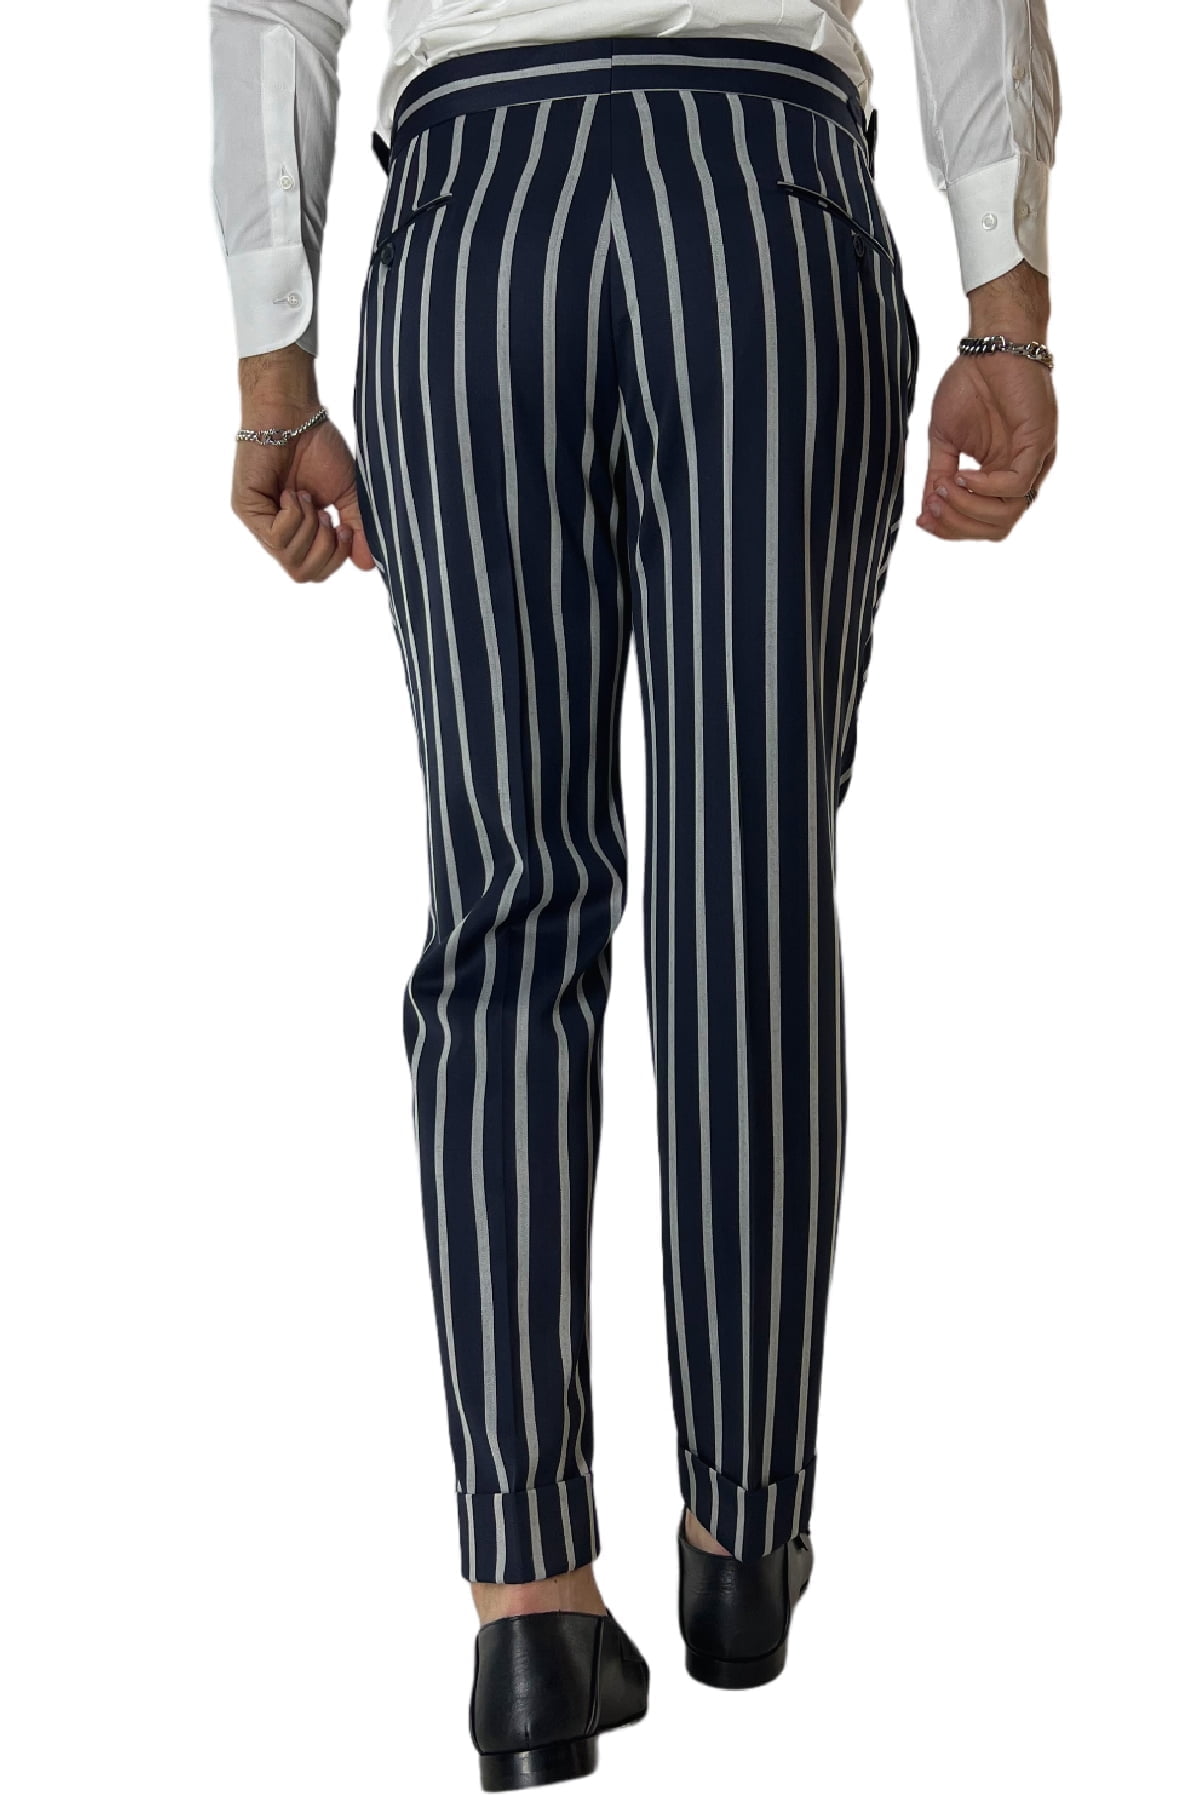 Pantalone uomo blu riga grigia in fresco lana 120's Holland & Sherry vita alta con pinces fibbie laterali e risvolto 4cm